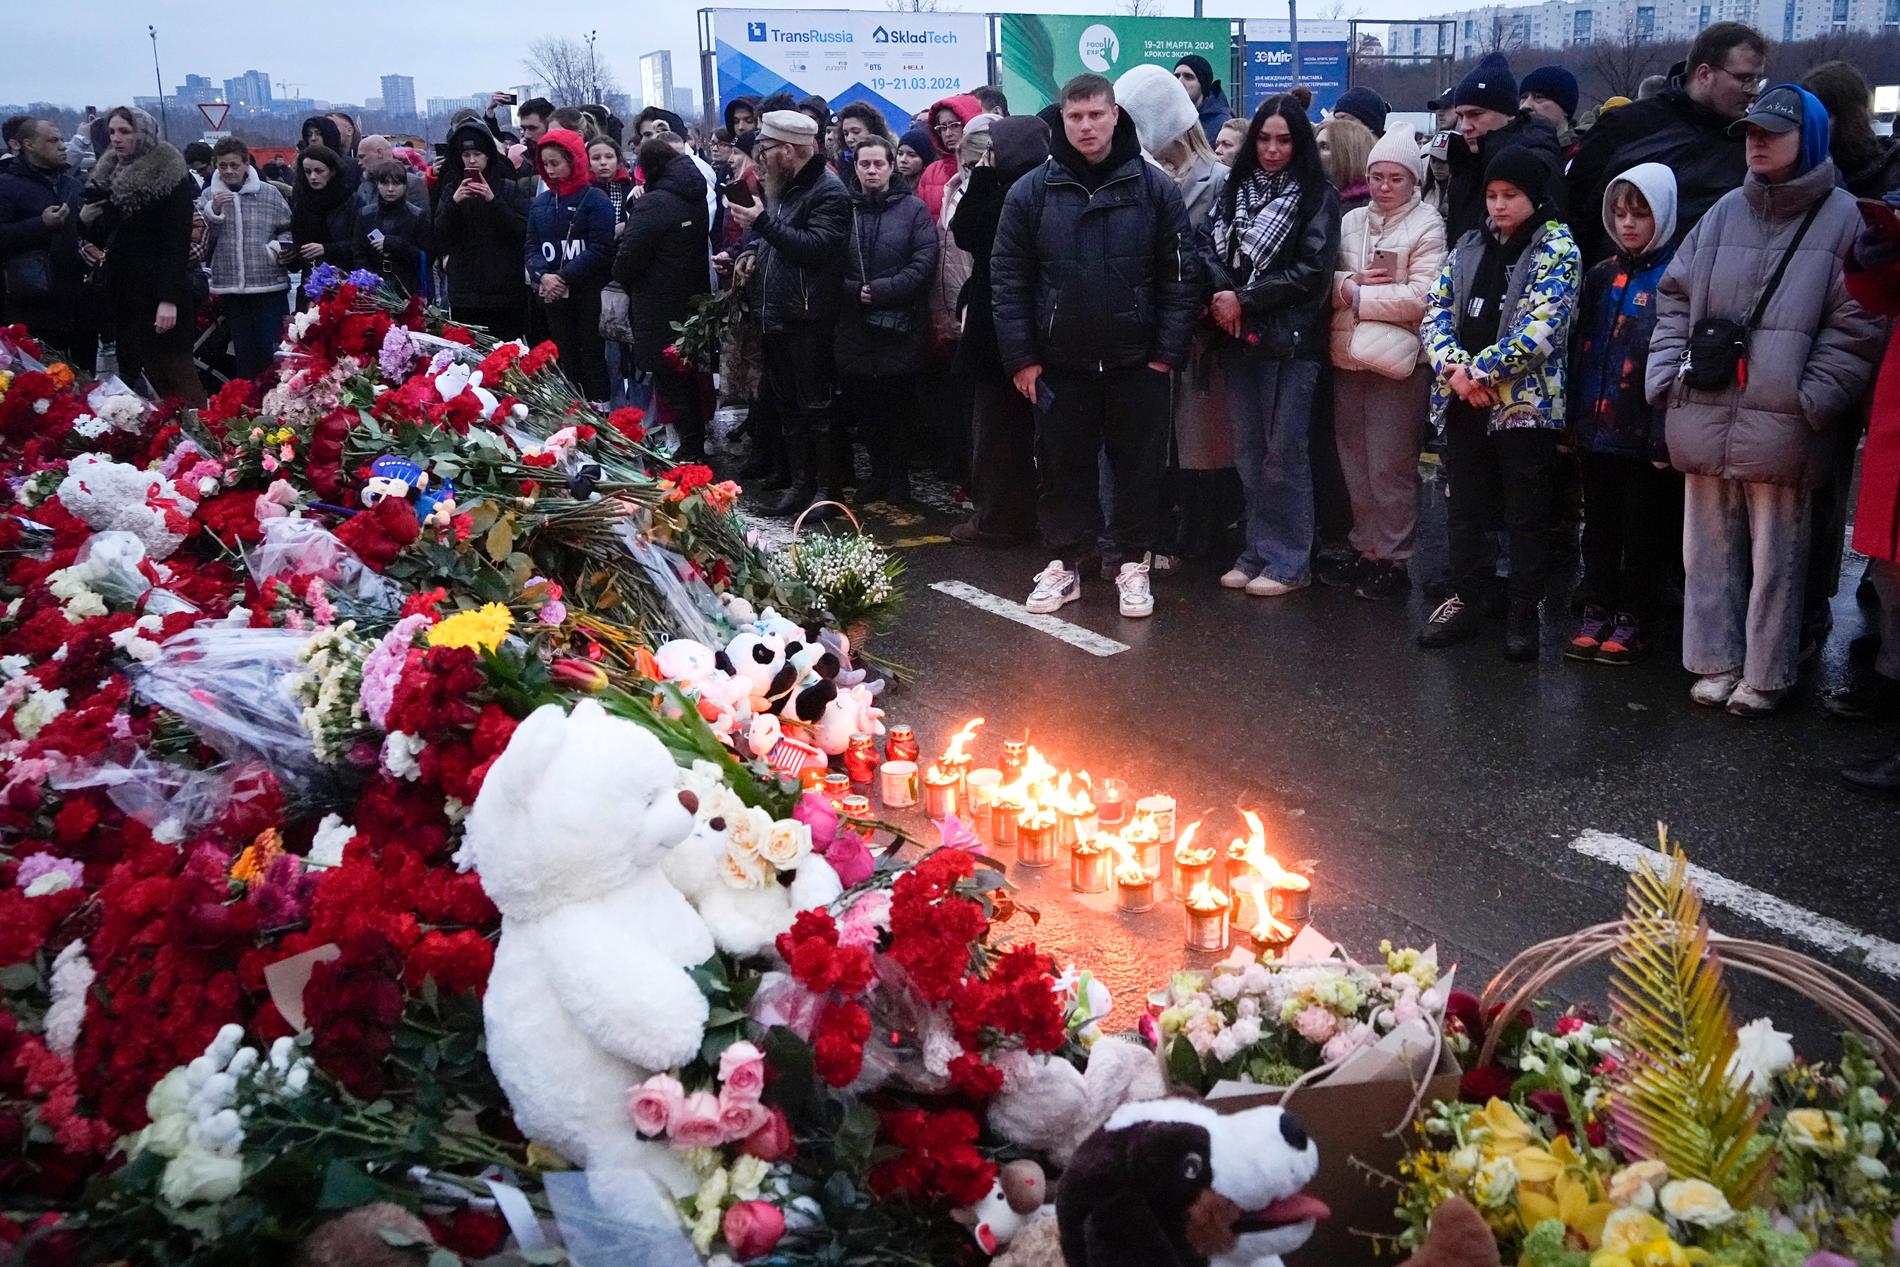 Sörjande människor samlas utanför konserthallen som var måltavla för terrordådet på fredagskvällen i Moskva. Havet av blommor och gosedjur har vuxit sig stort.